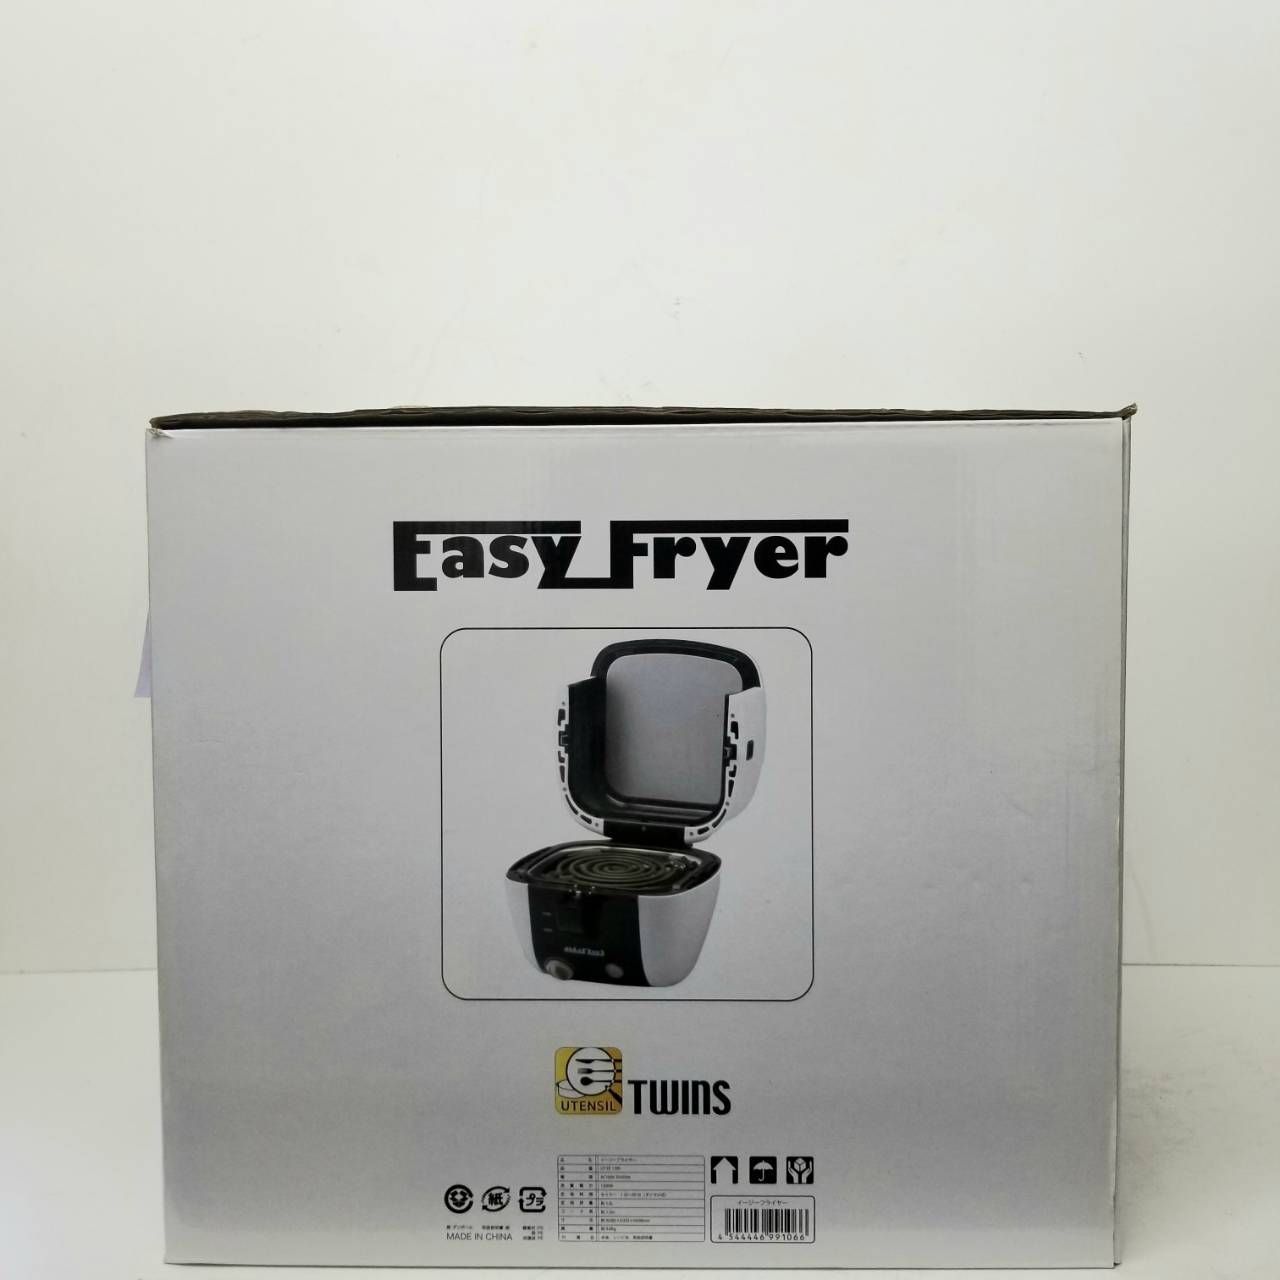 イージーフライヤー Easy Fryer ツインズ UT-EF1300 - 調理機器